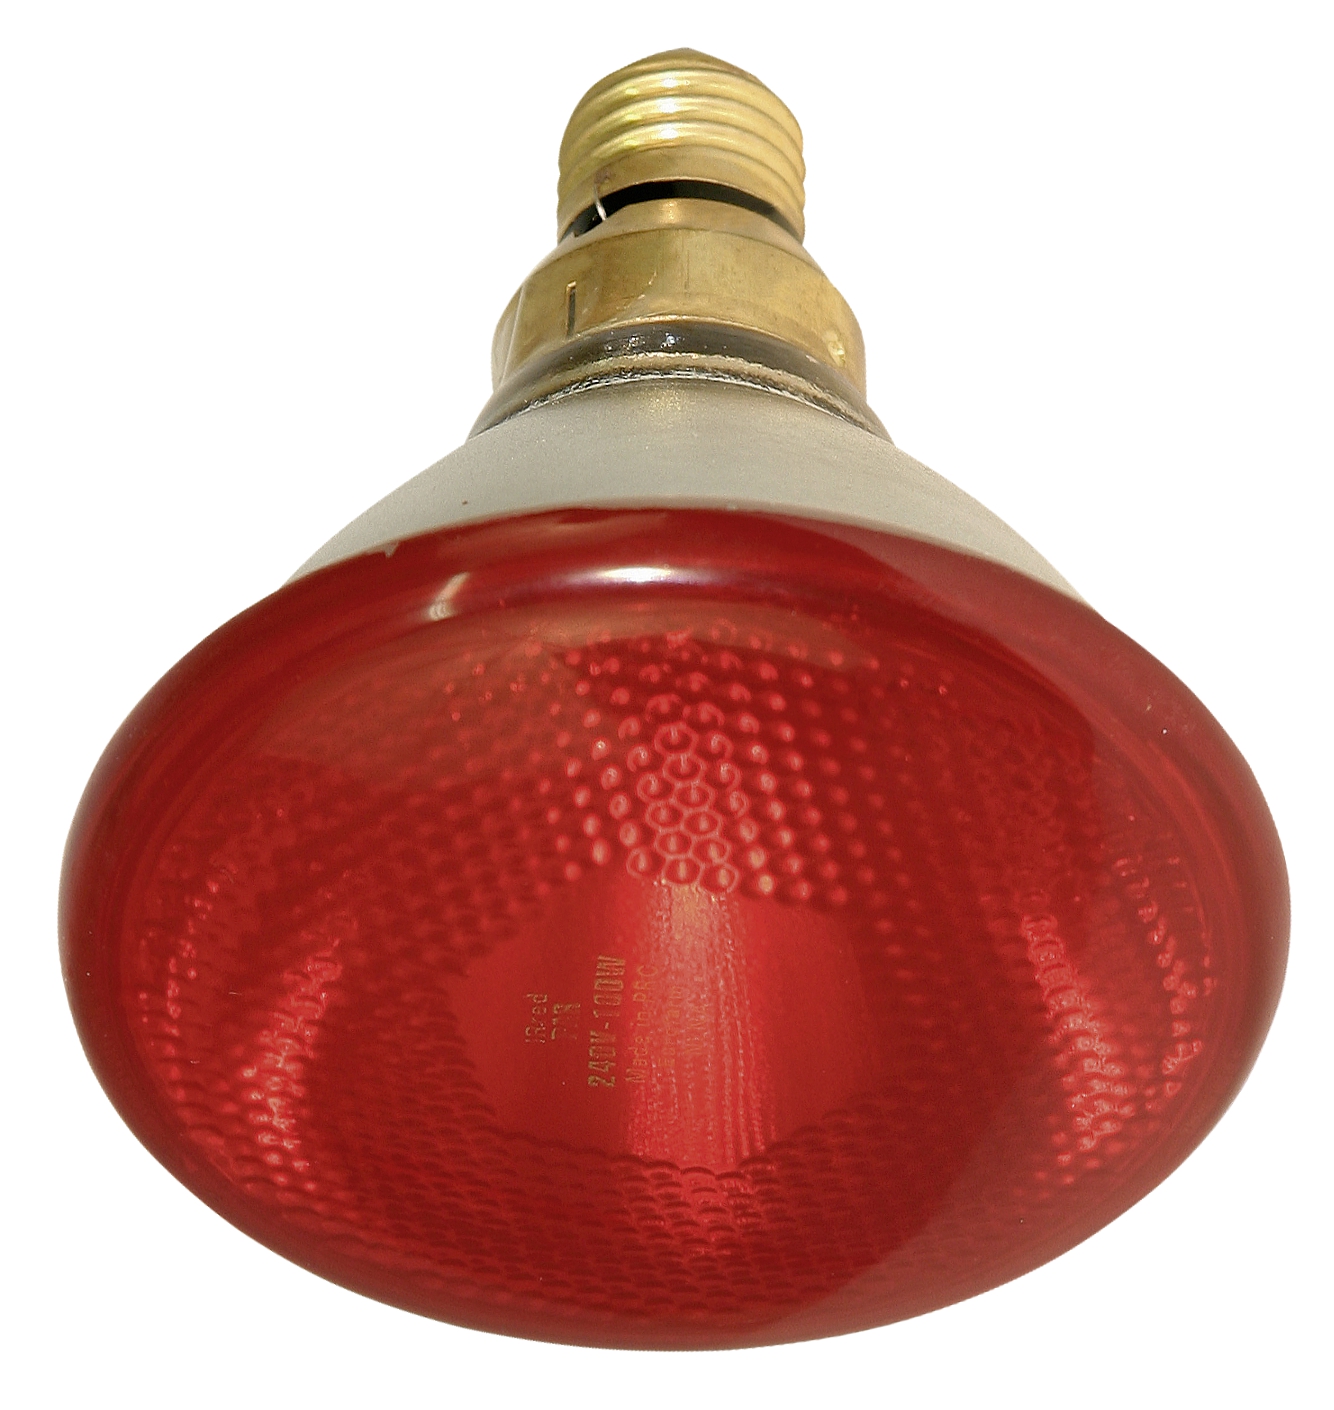 ИК-лампа Kerb 100, красная